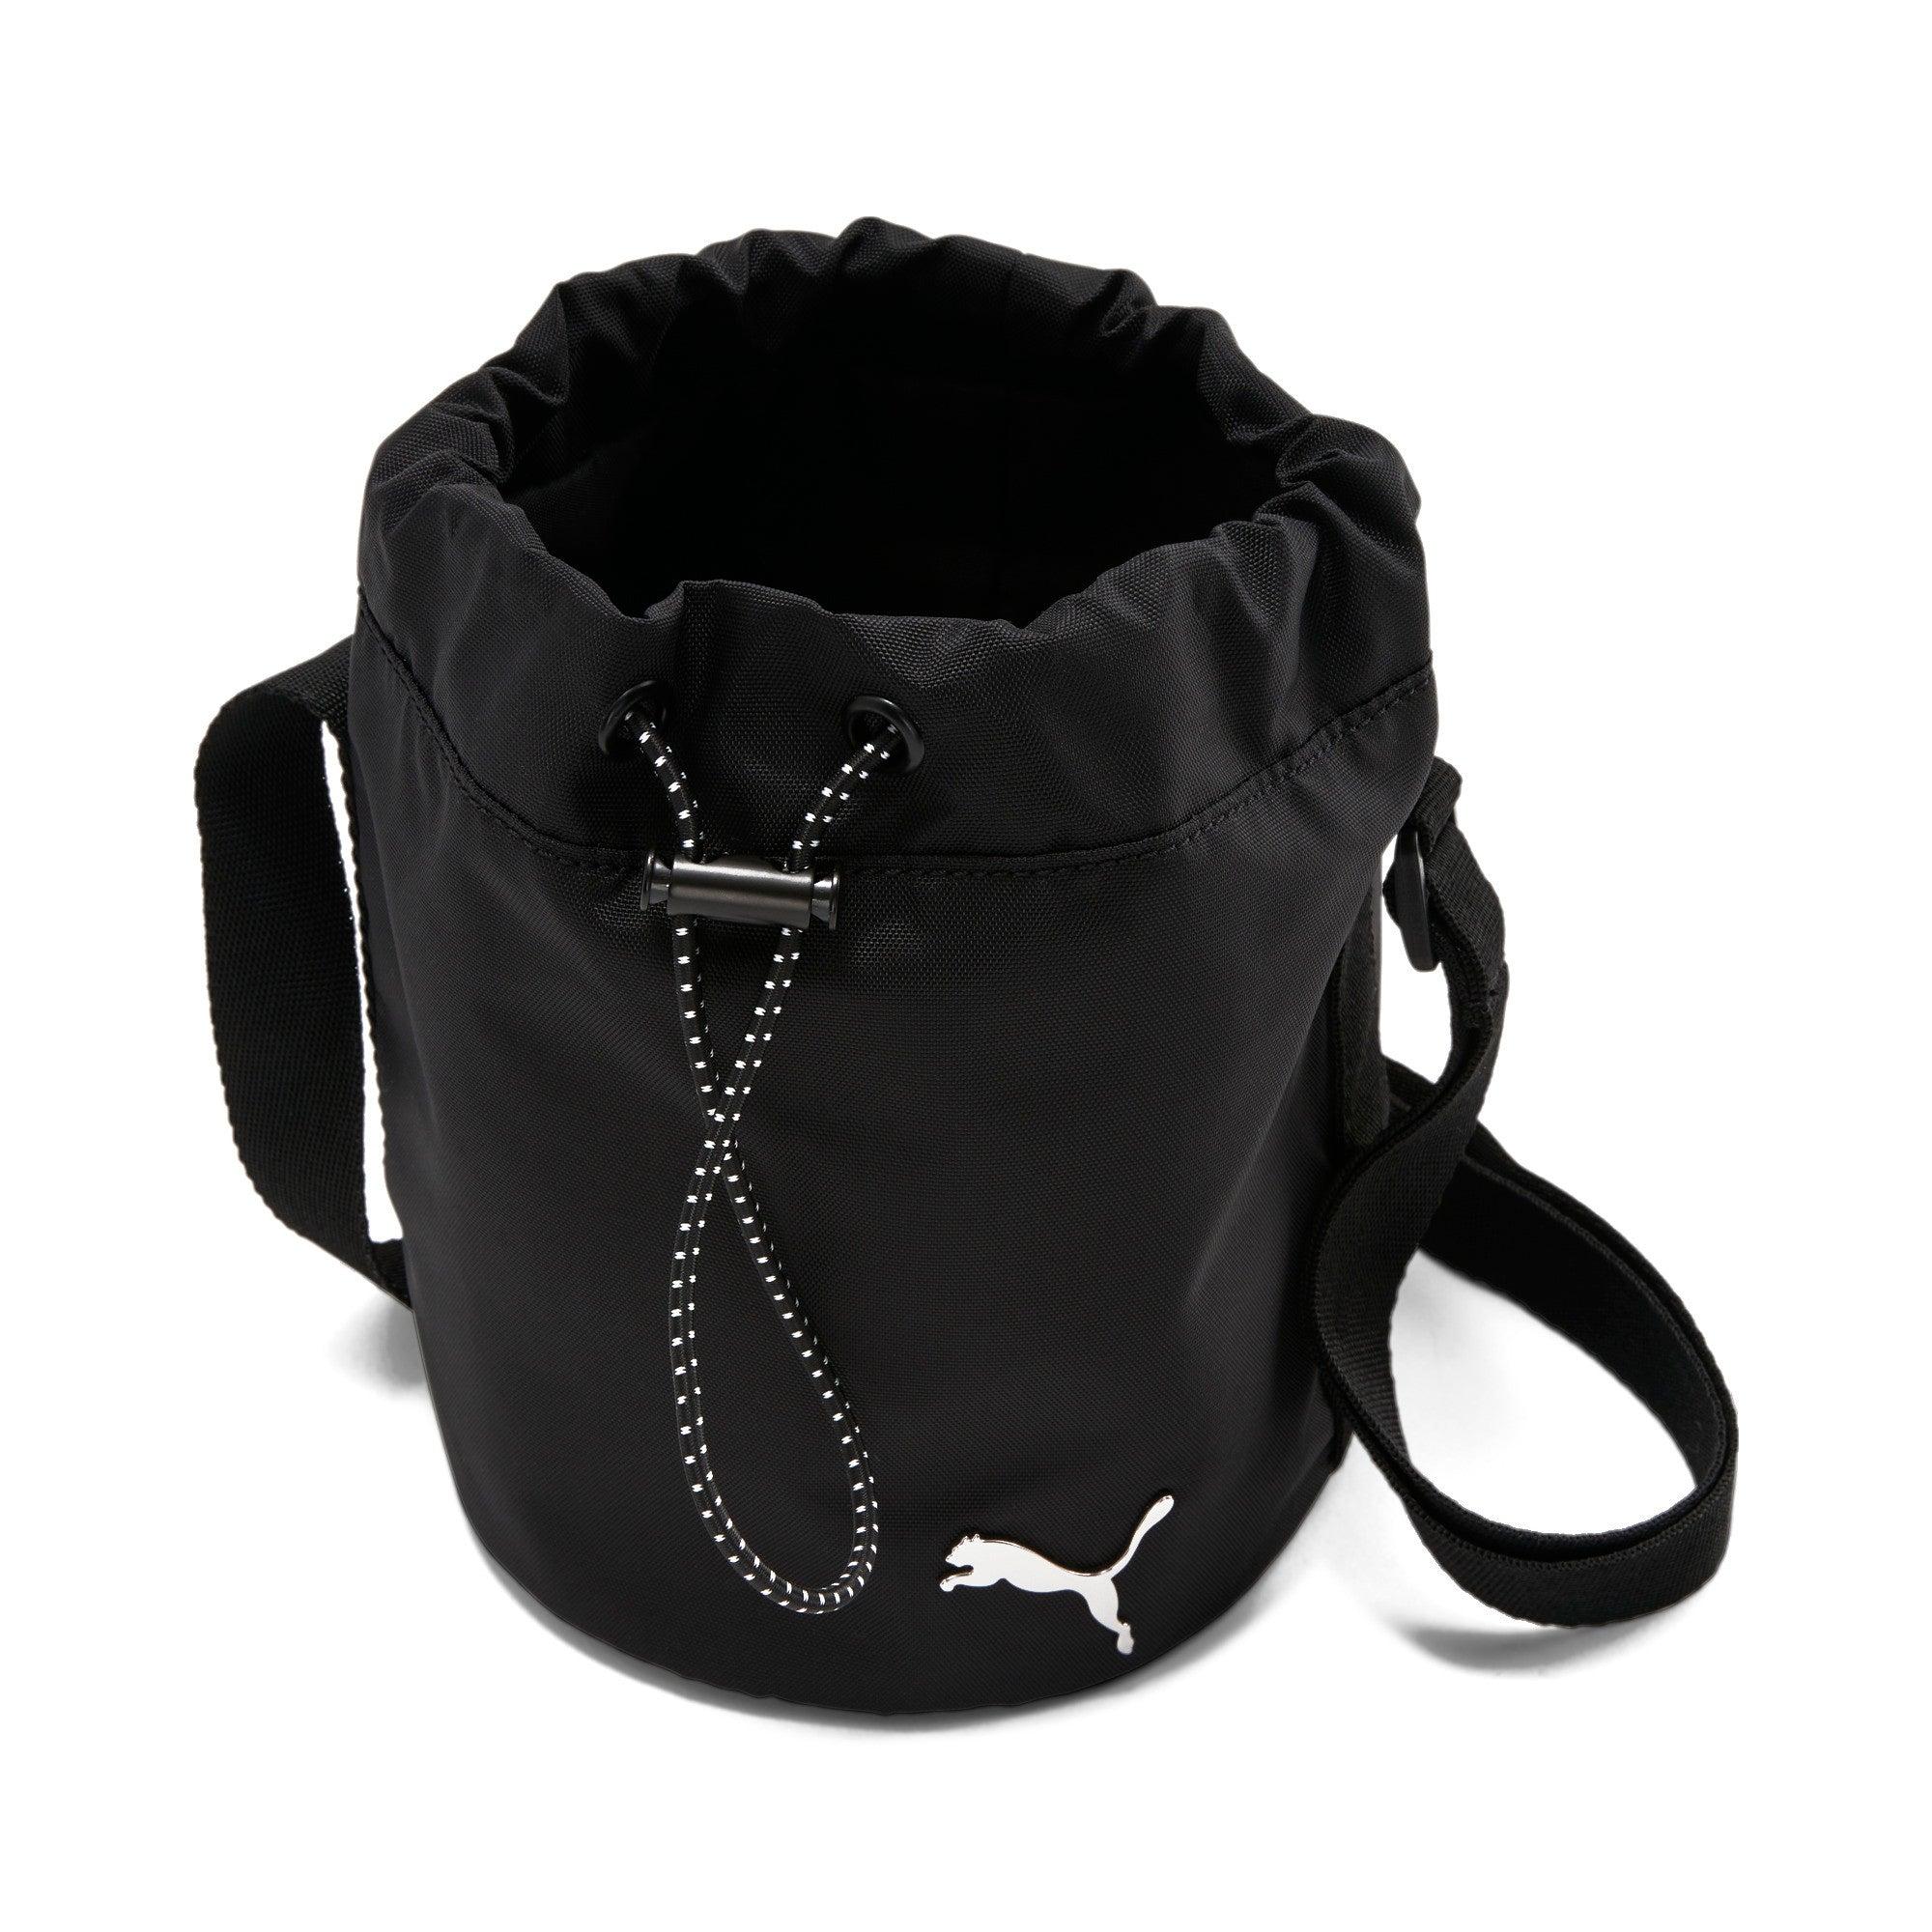 Puma - Prime Premium Bucket Bag